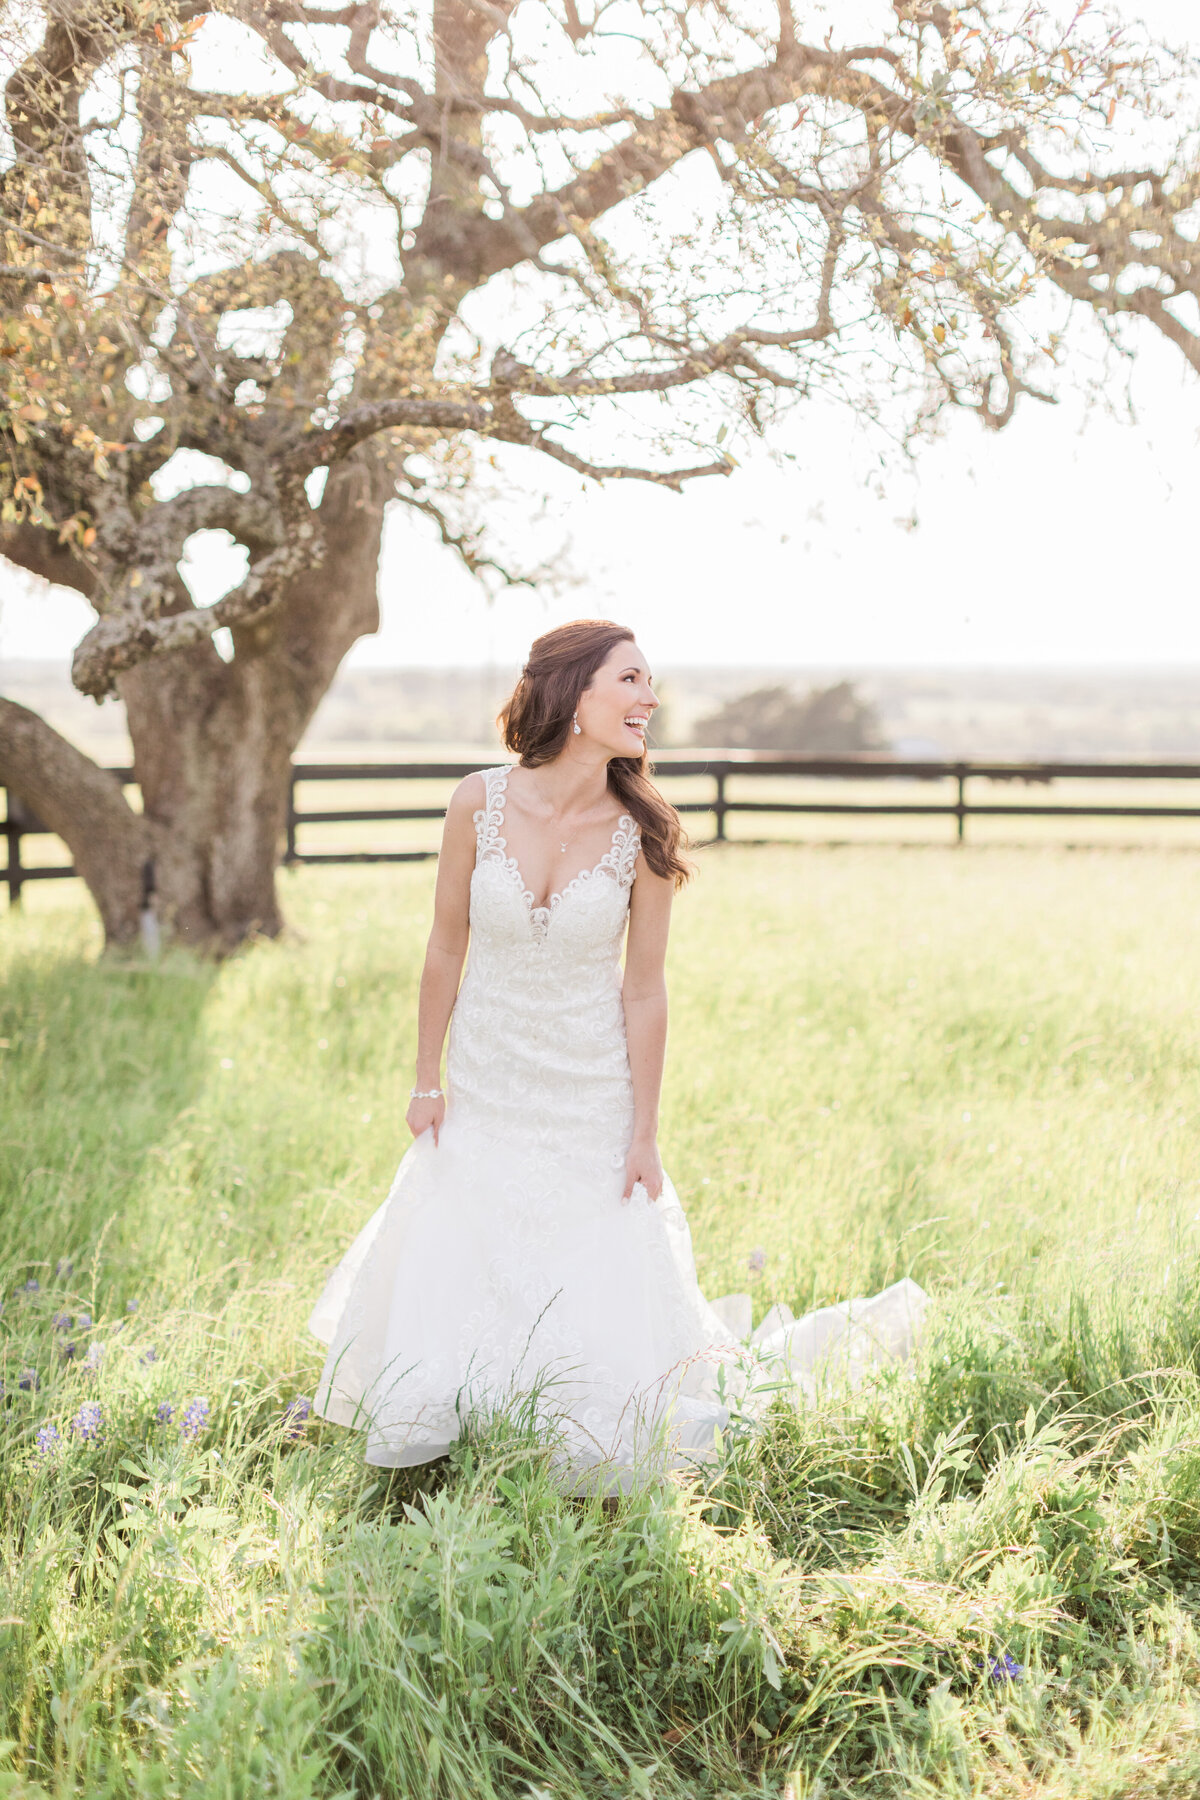 An outdoor Texas bride